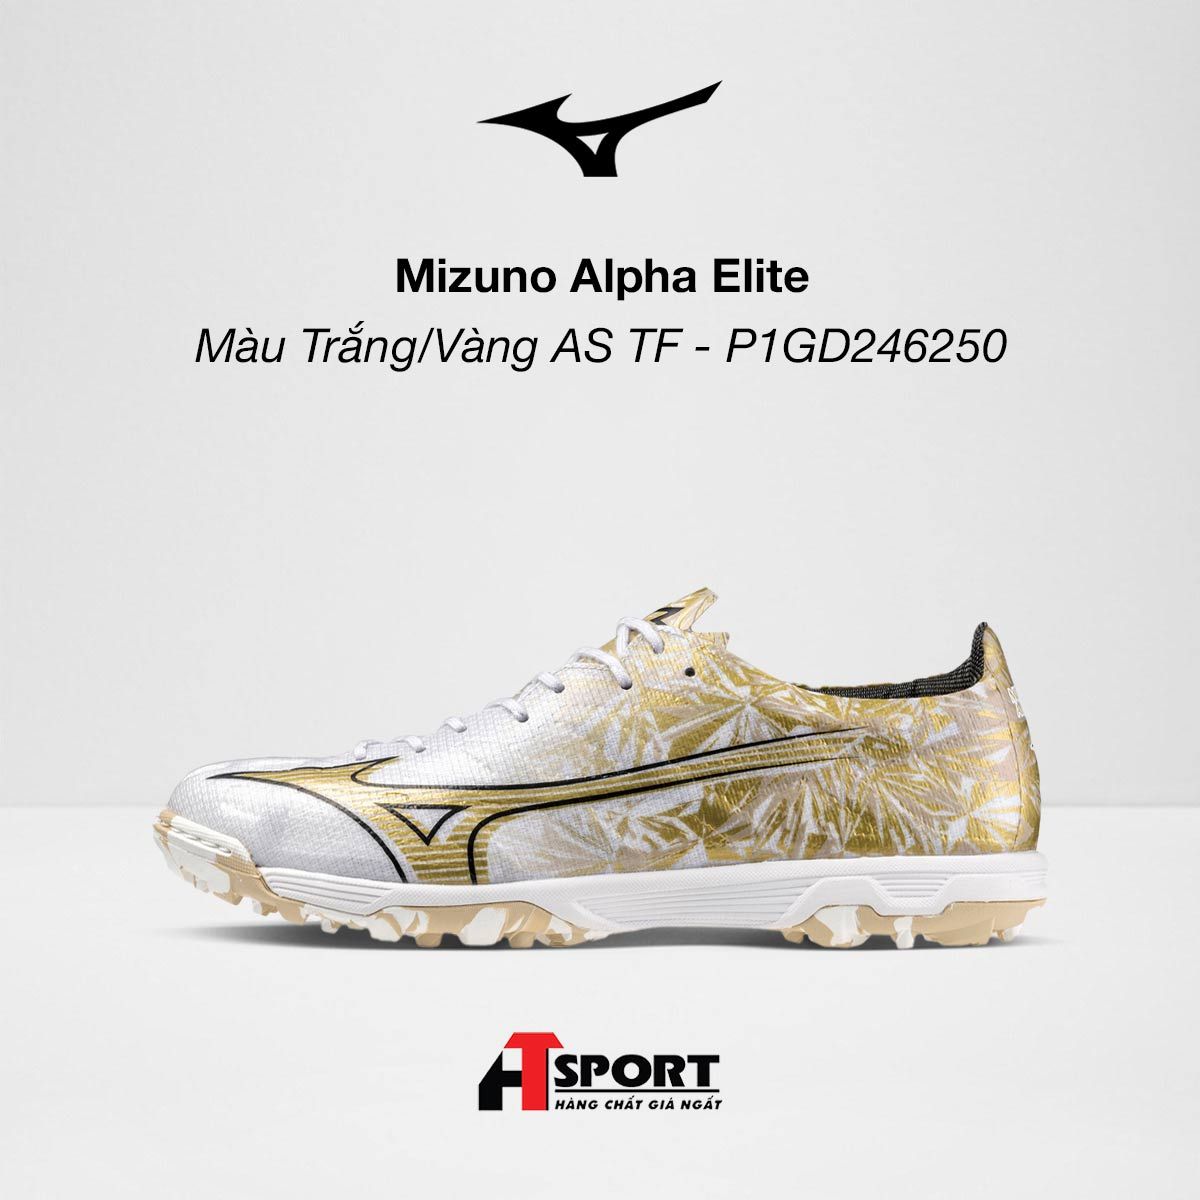  Mizuno Alpha Elite - Màu Trắng/Vàng AS TF - P1GD246250 